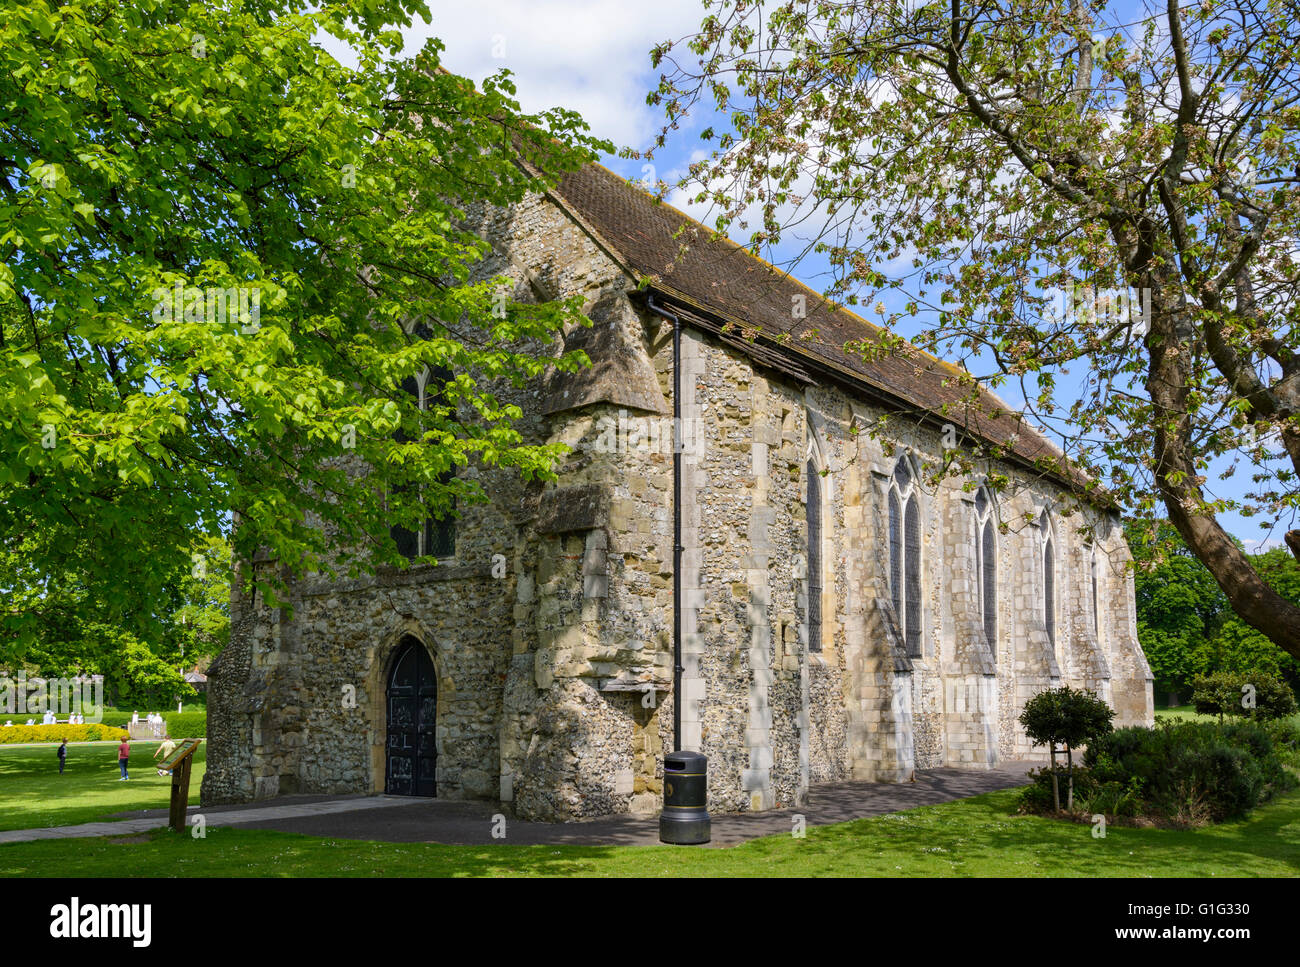 Die Guildhall mittelalterliche Kirchengebäude (Greyfriars Kirche oder Kapelle) in Priory Park, Chichester, West Sussex, England, Großbritannien. Stockfoto